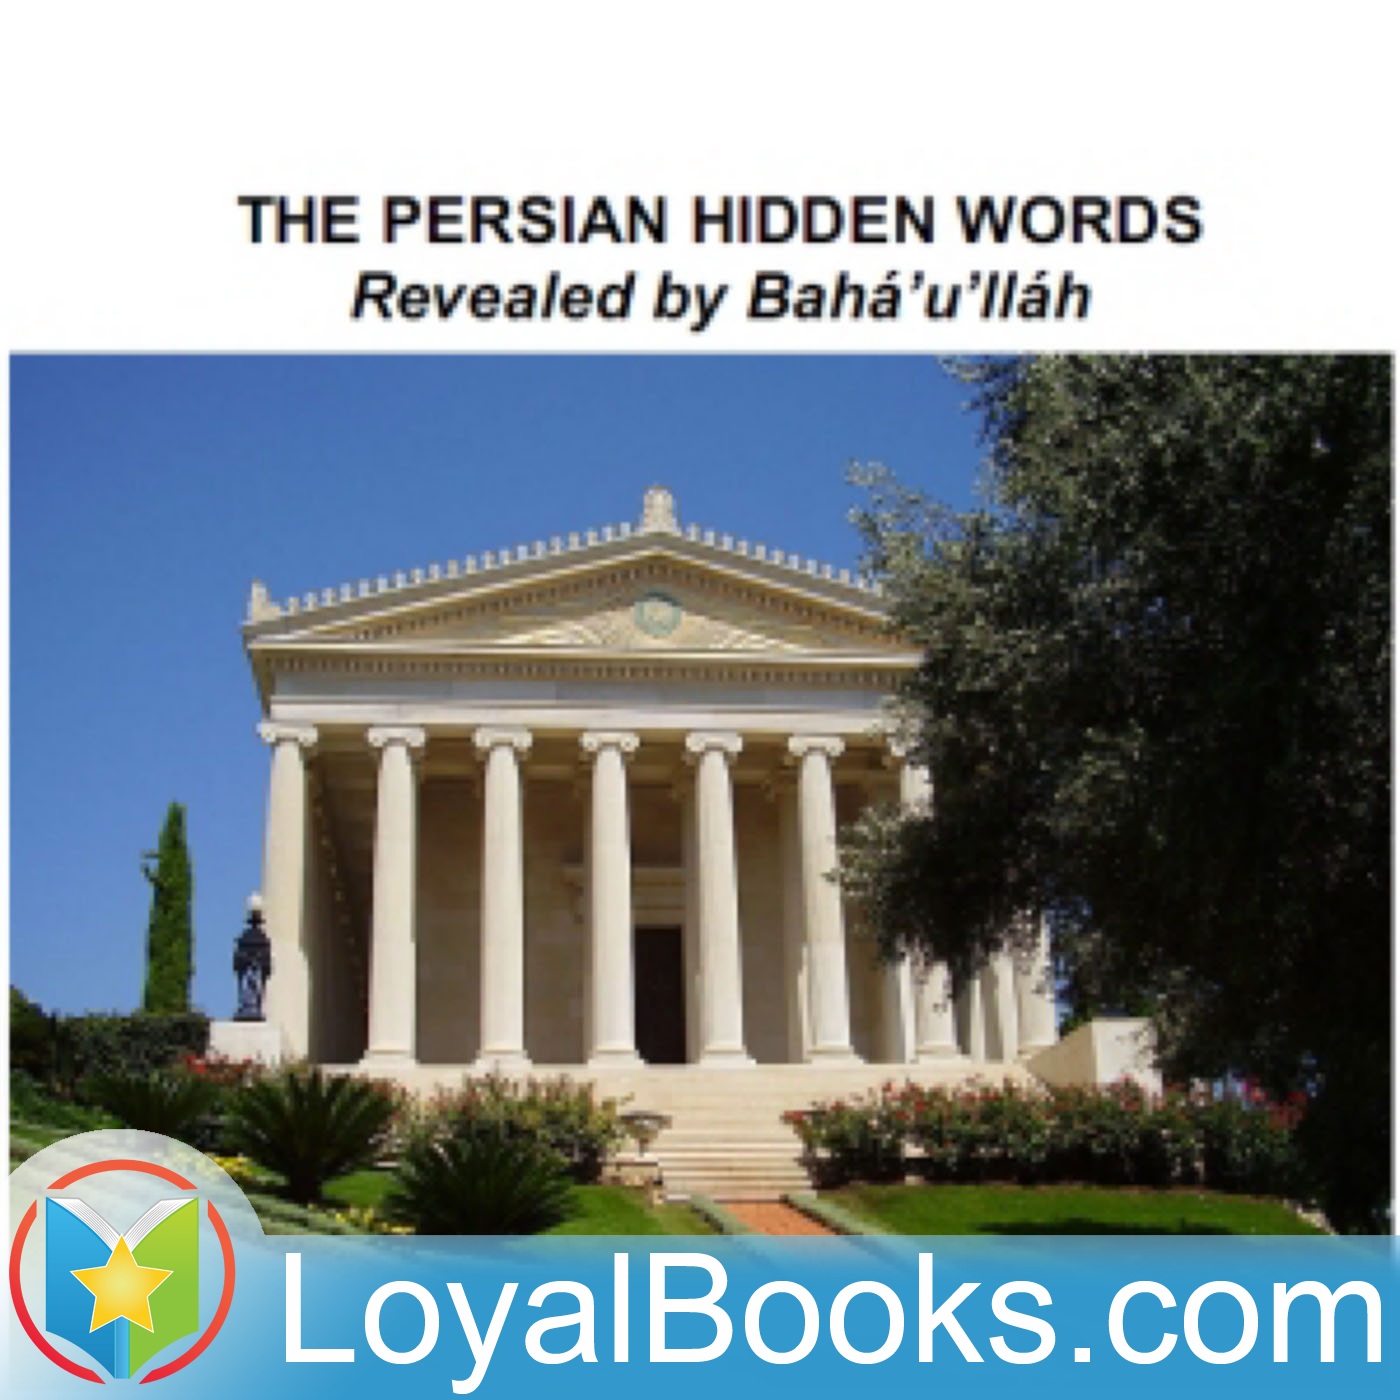 The Persian Hidden Words by Bahá’u'lláh